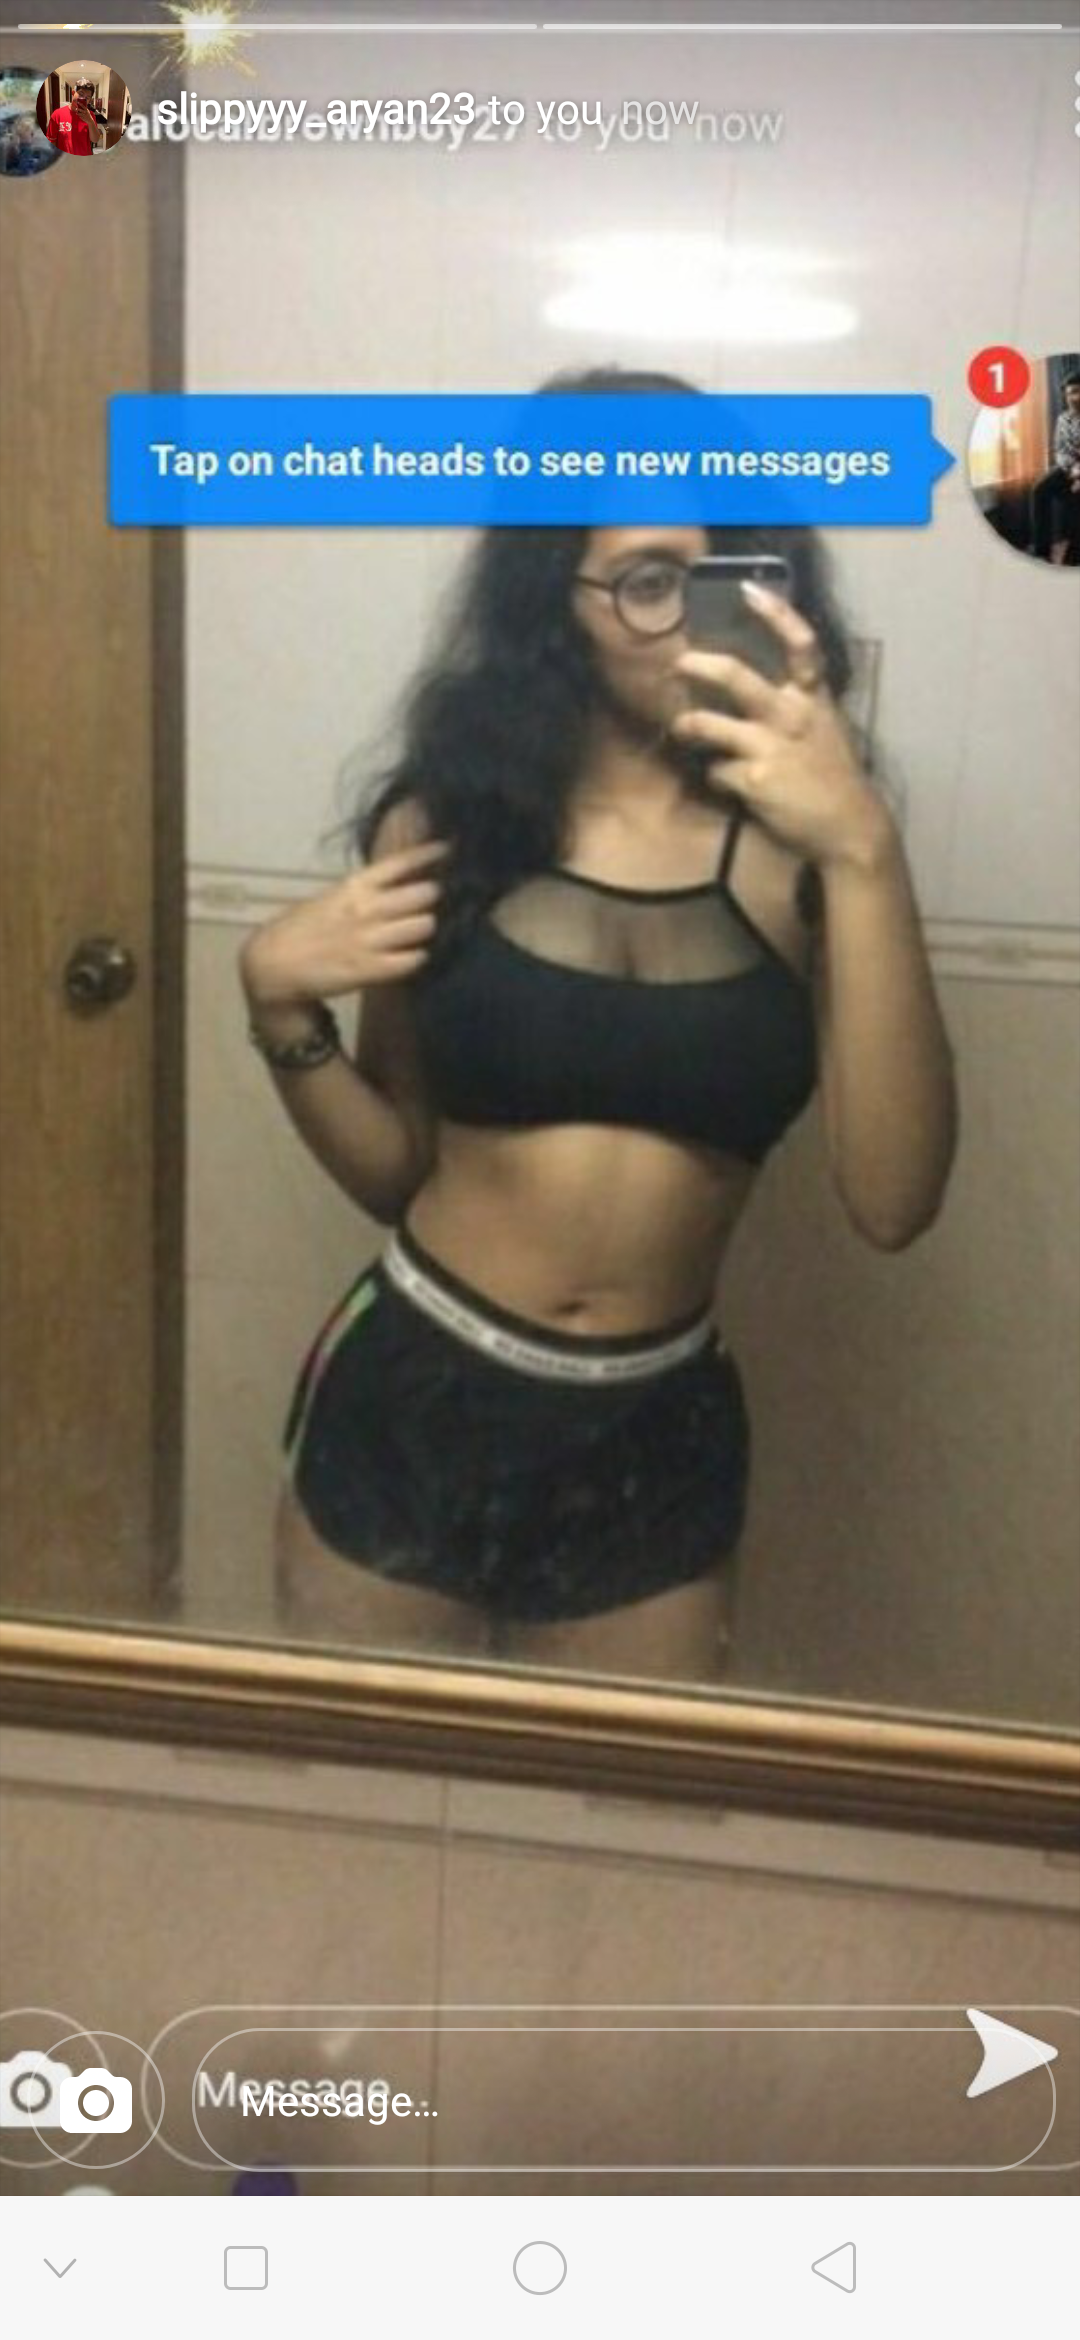 Sarawar Indian Desi Snapchat Slut [Pics]